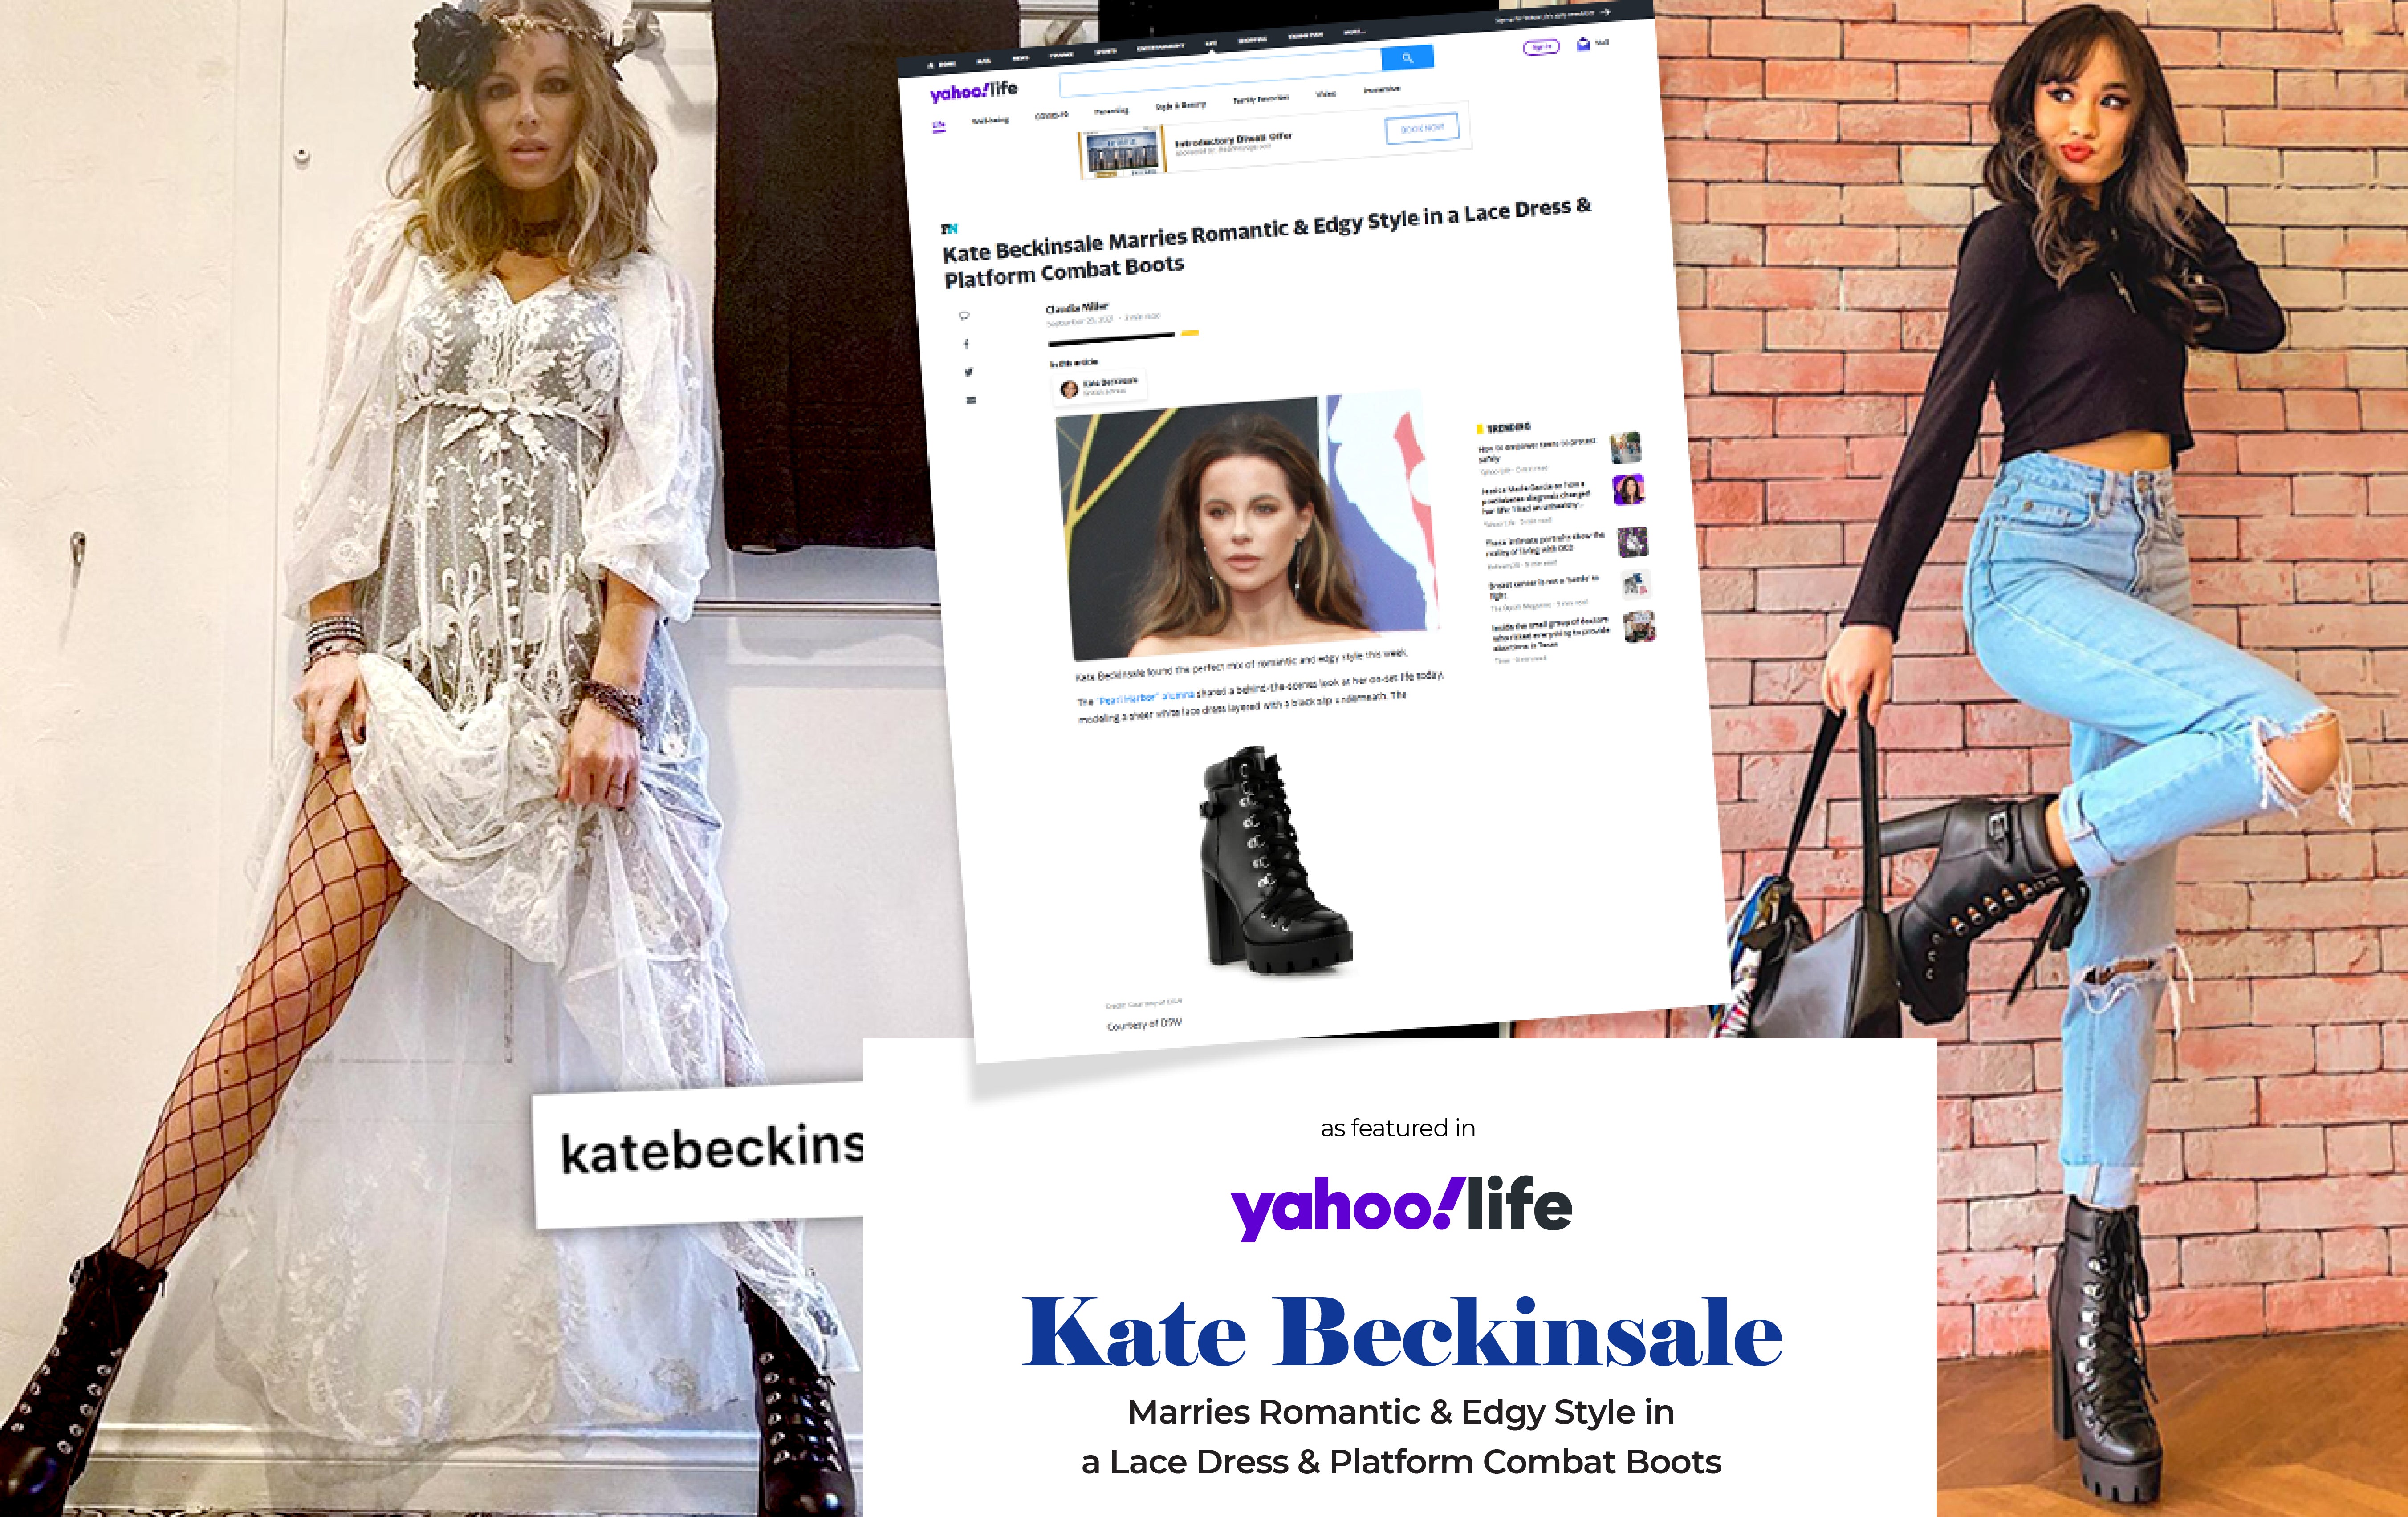 Kate Beckinsale แต่งงานกับสไตล์โรแมนติกและความหงุดหงิดในรองเท้าบูทชุดลูกไม้และแพลตฟอร์ม